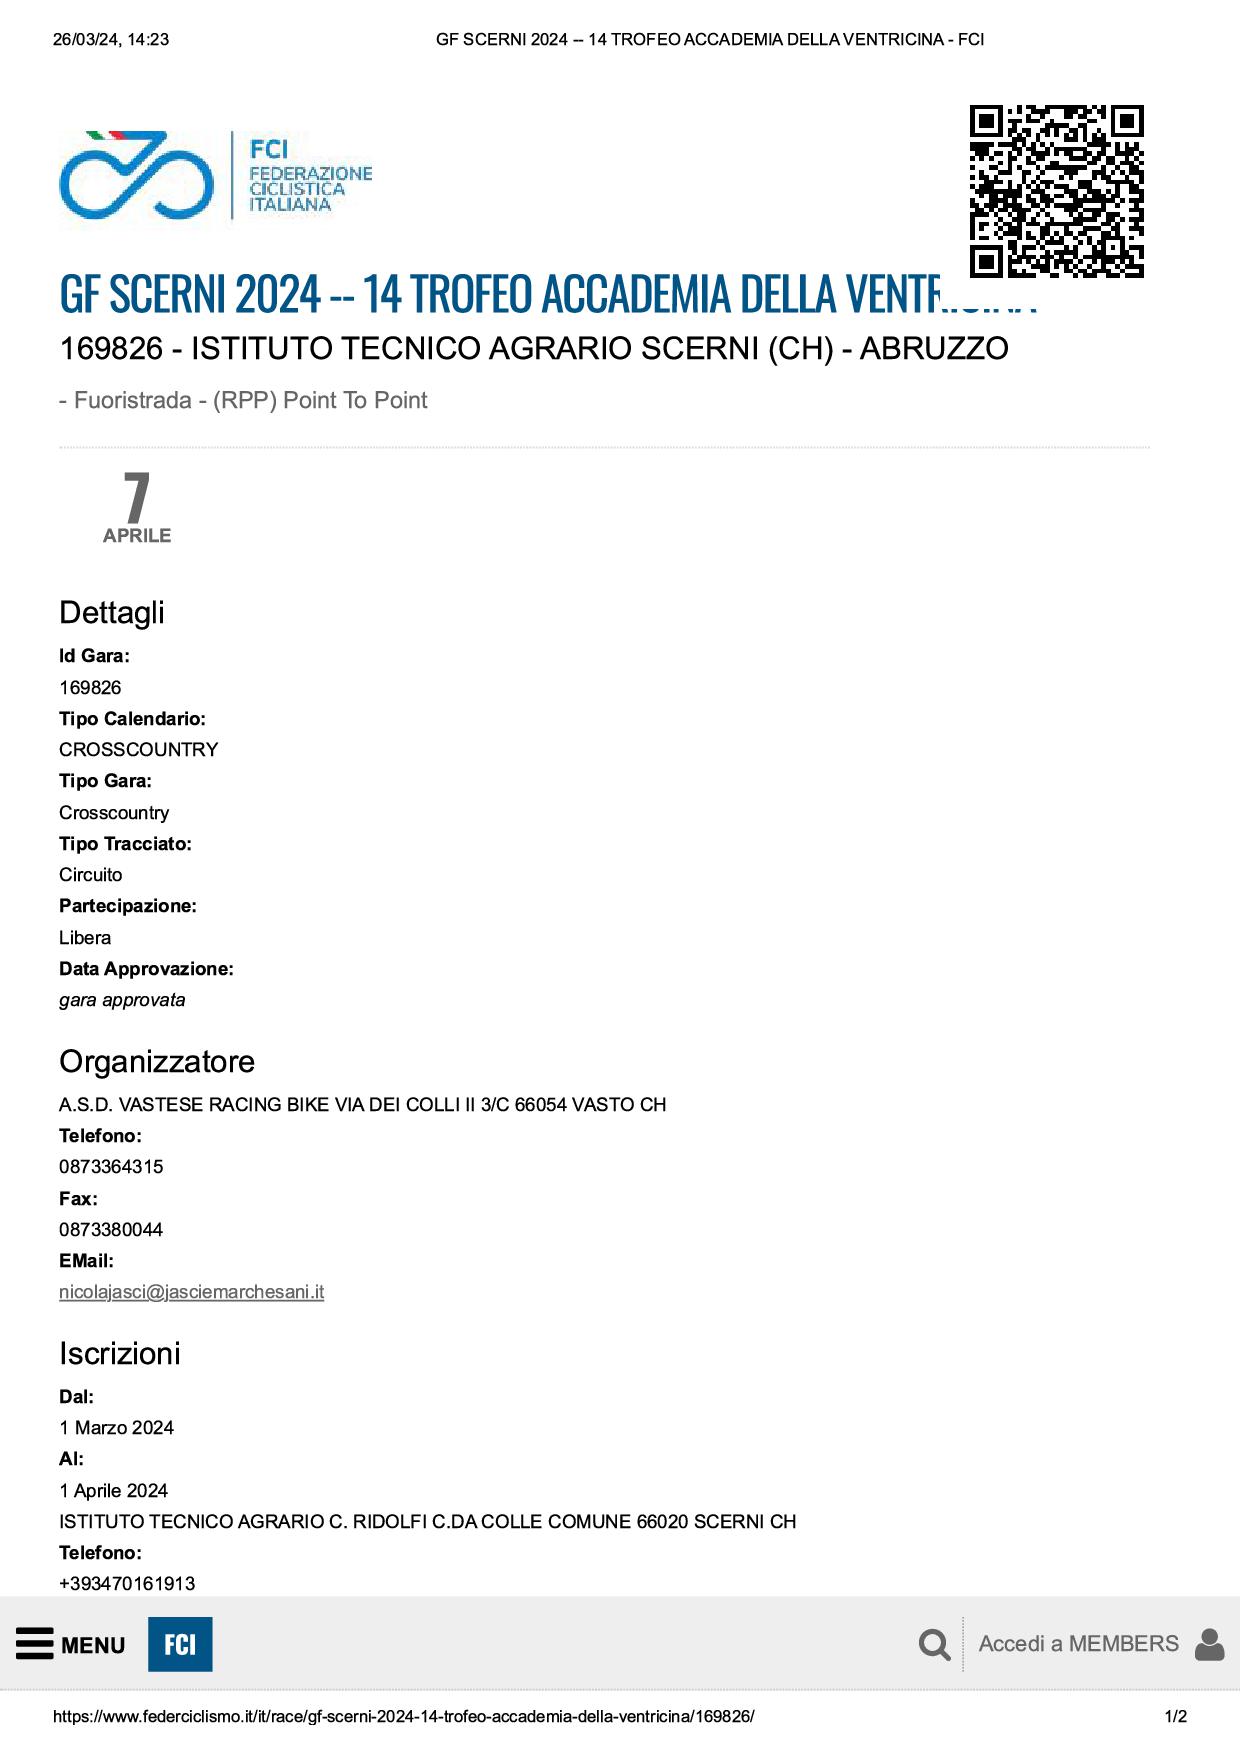 GF SCERNI 2024 14 TROFEO ACCADEMIA DELLA VENTRICINA FCI1